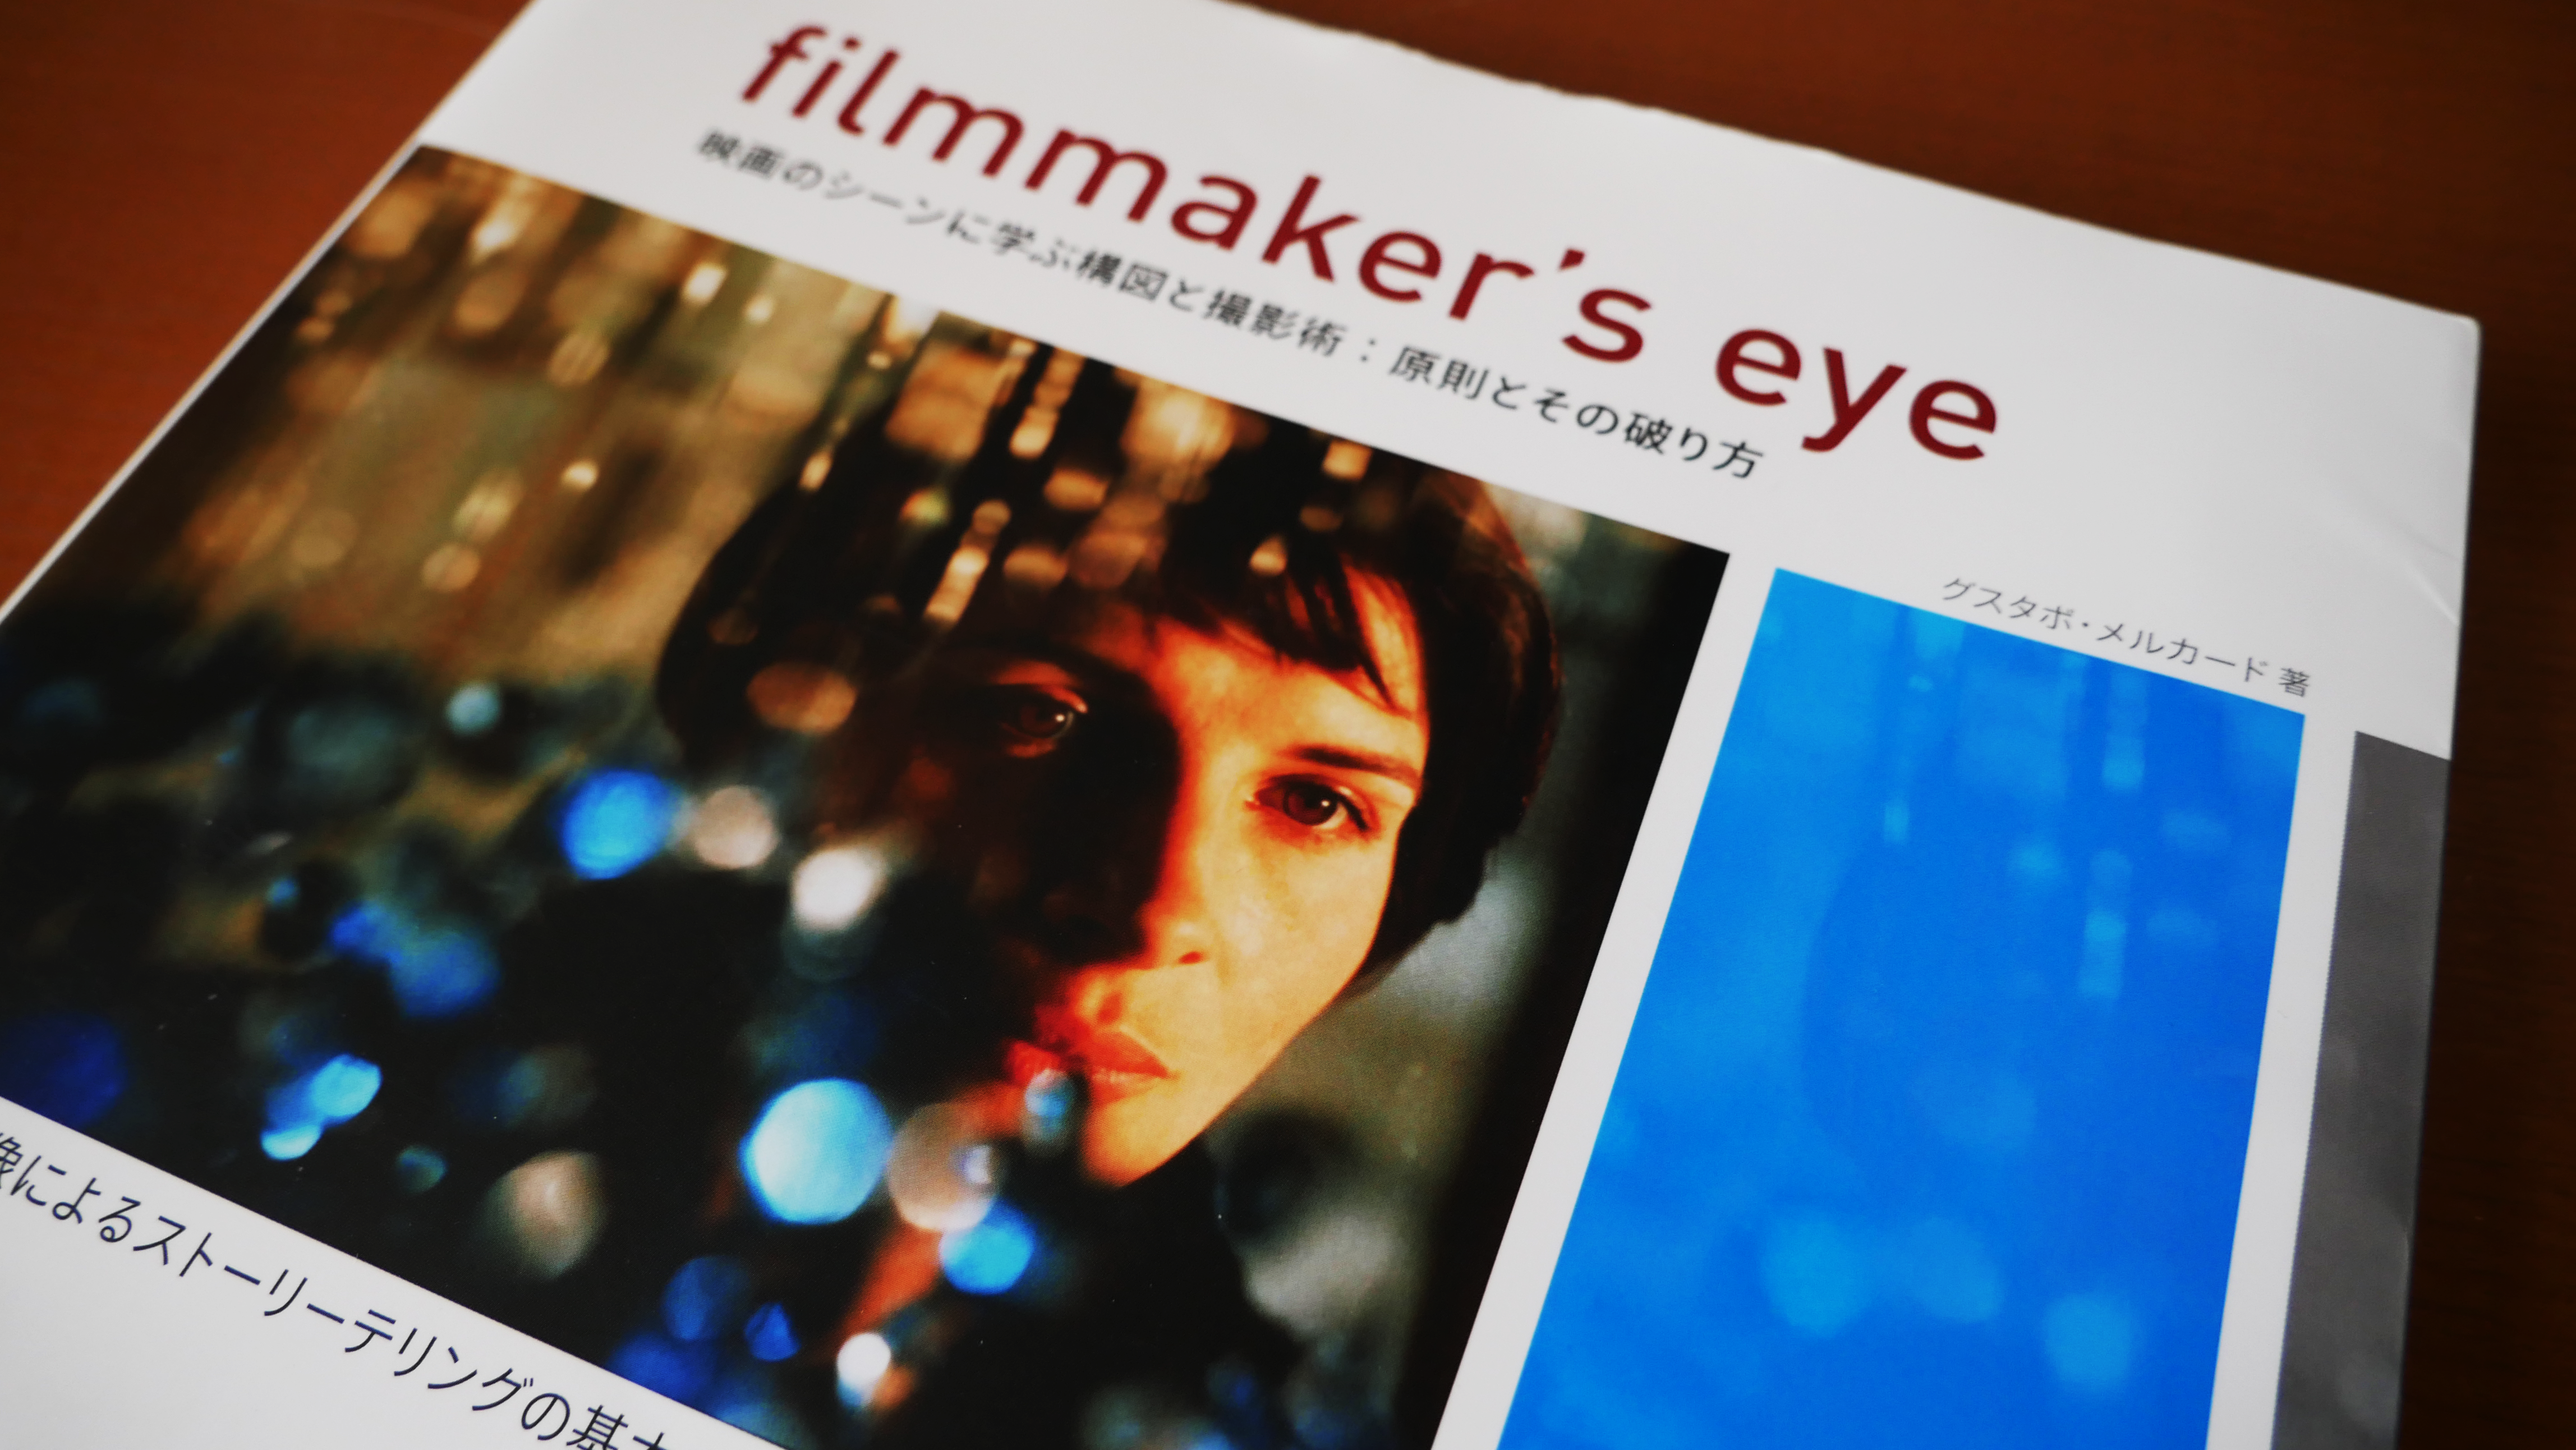 filmmaker's eye